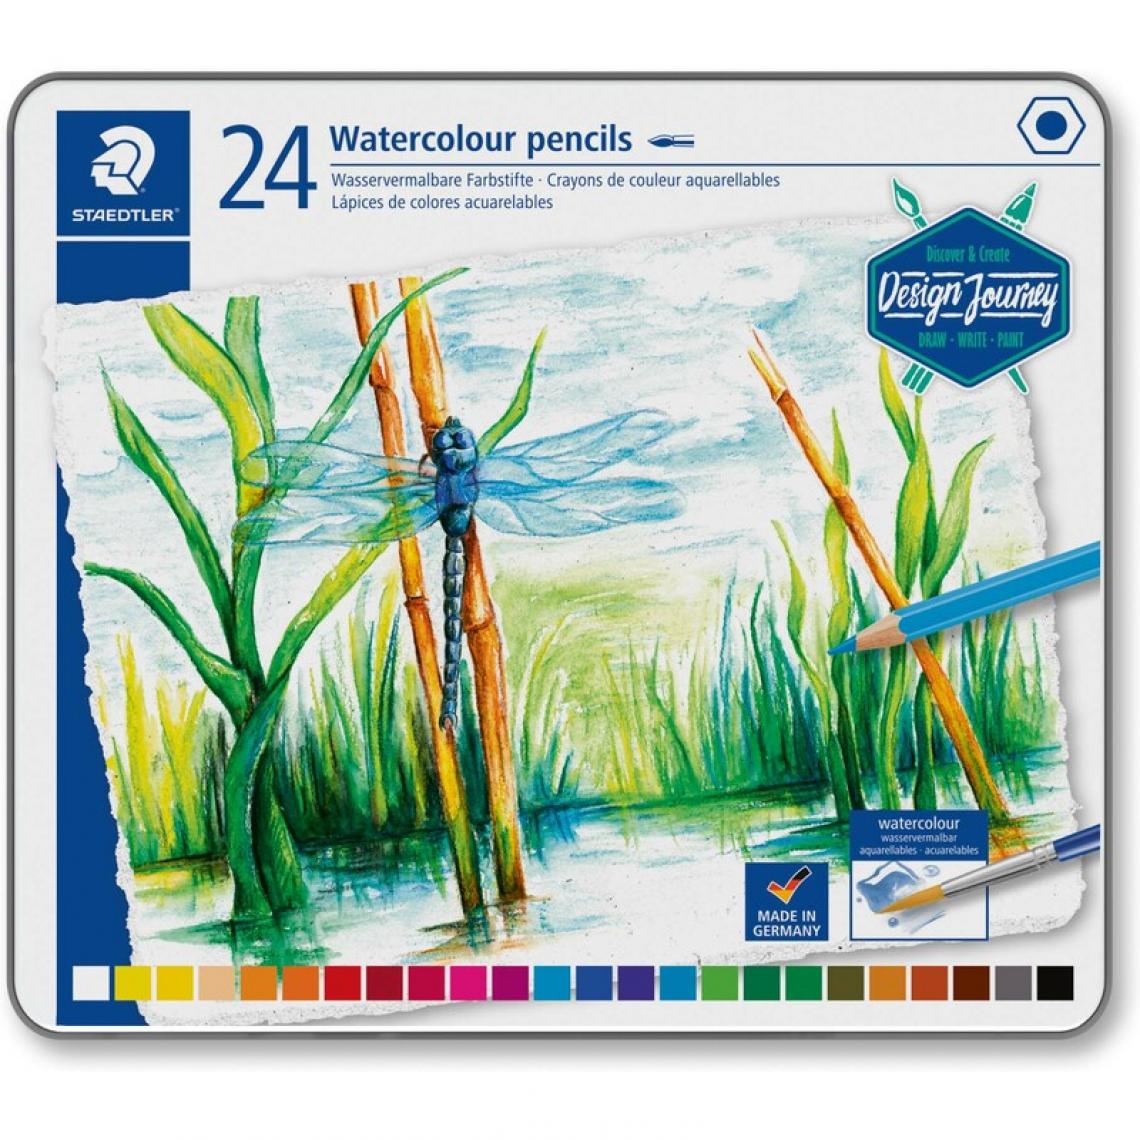 Staedtler - STAEDTLER Crayon de couleur Design Journey, étui métal de 24 () - Outils et accessoires du peintre